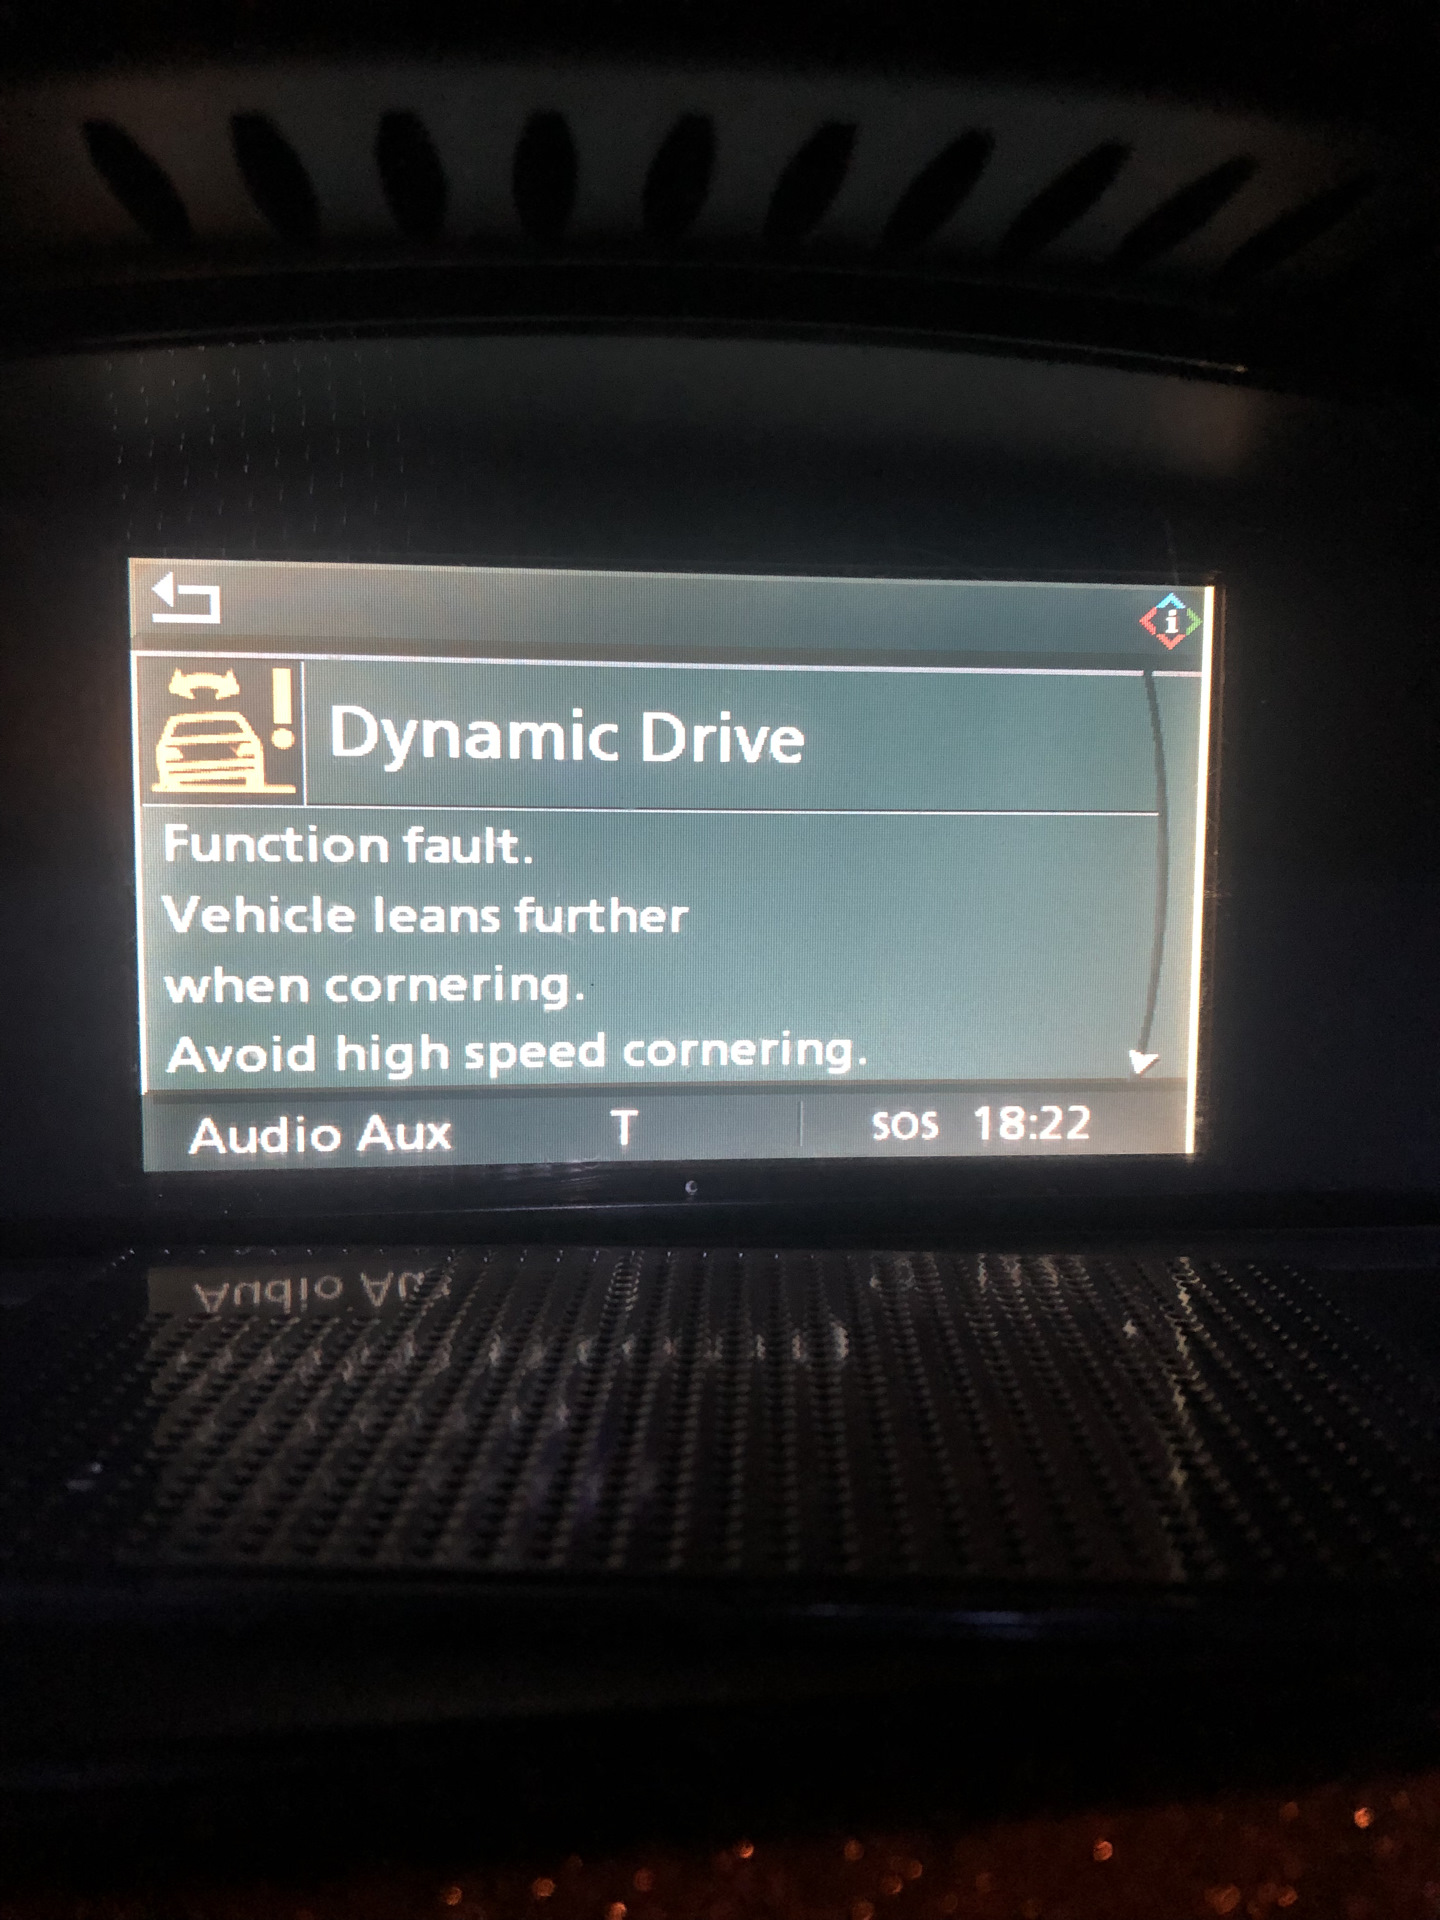 Dynamic drive